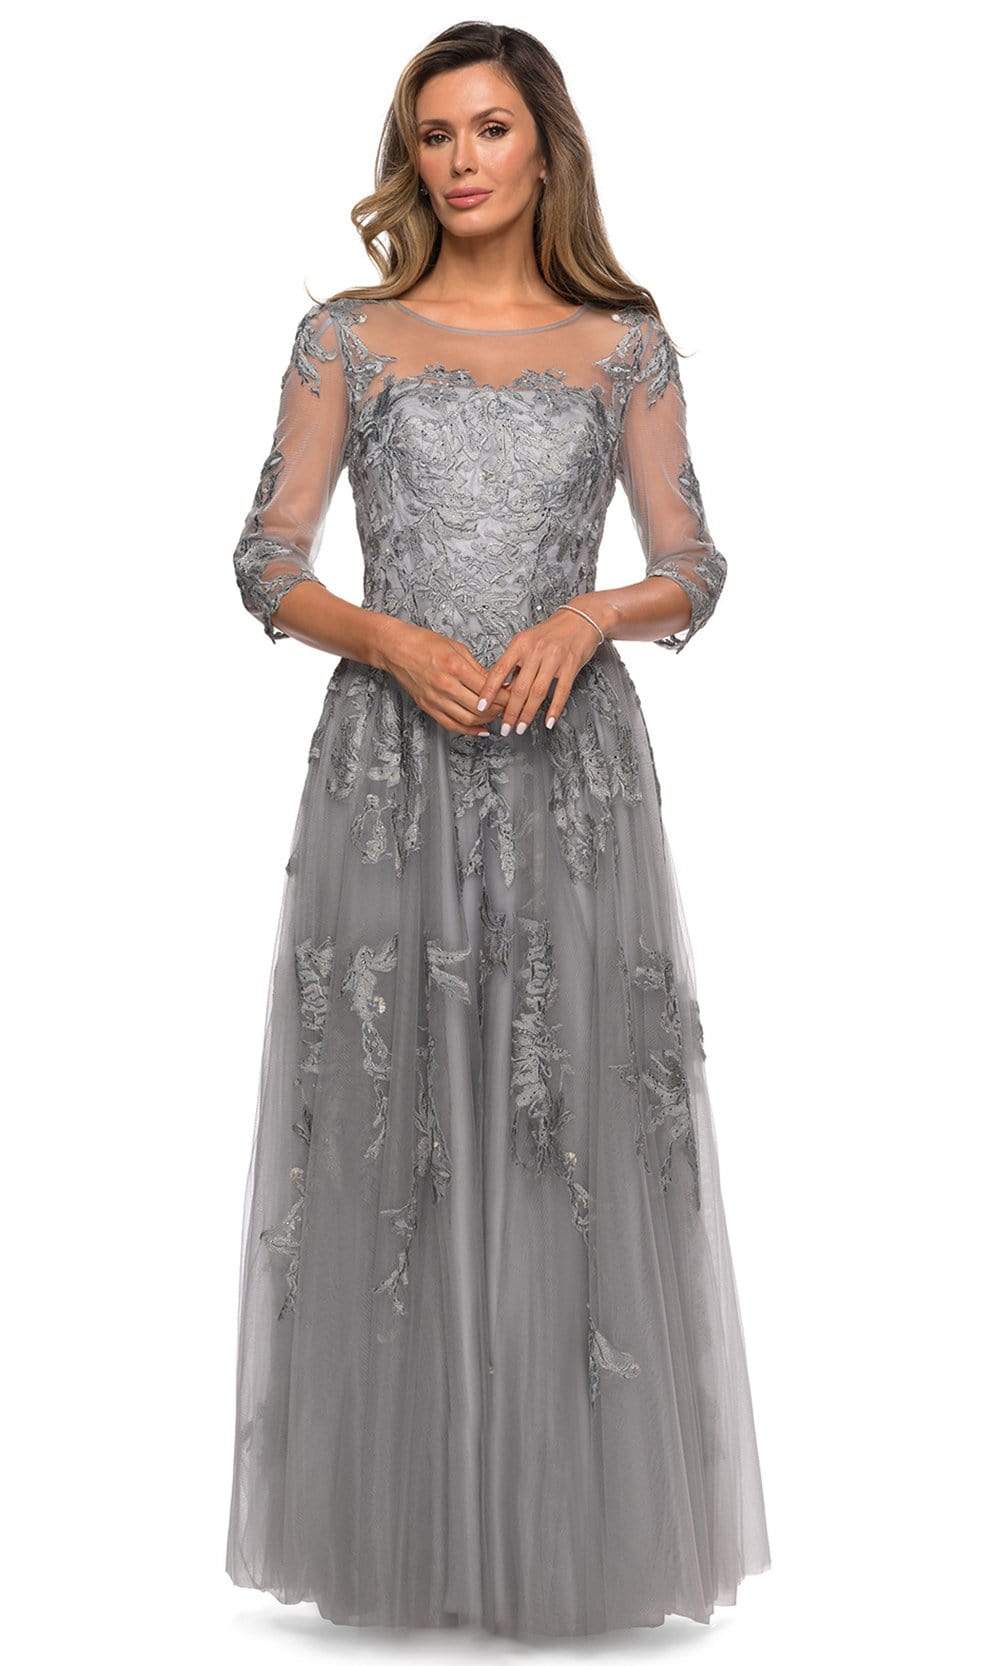 La Femme - 27944 Illusion Scoop Lace Appliqued Dress
